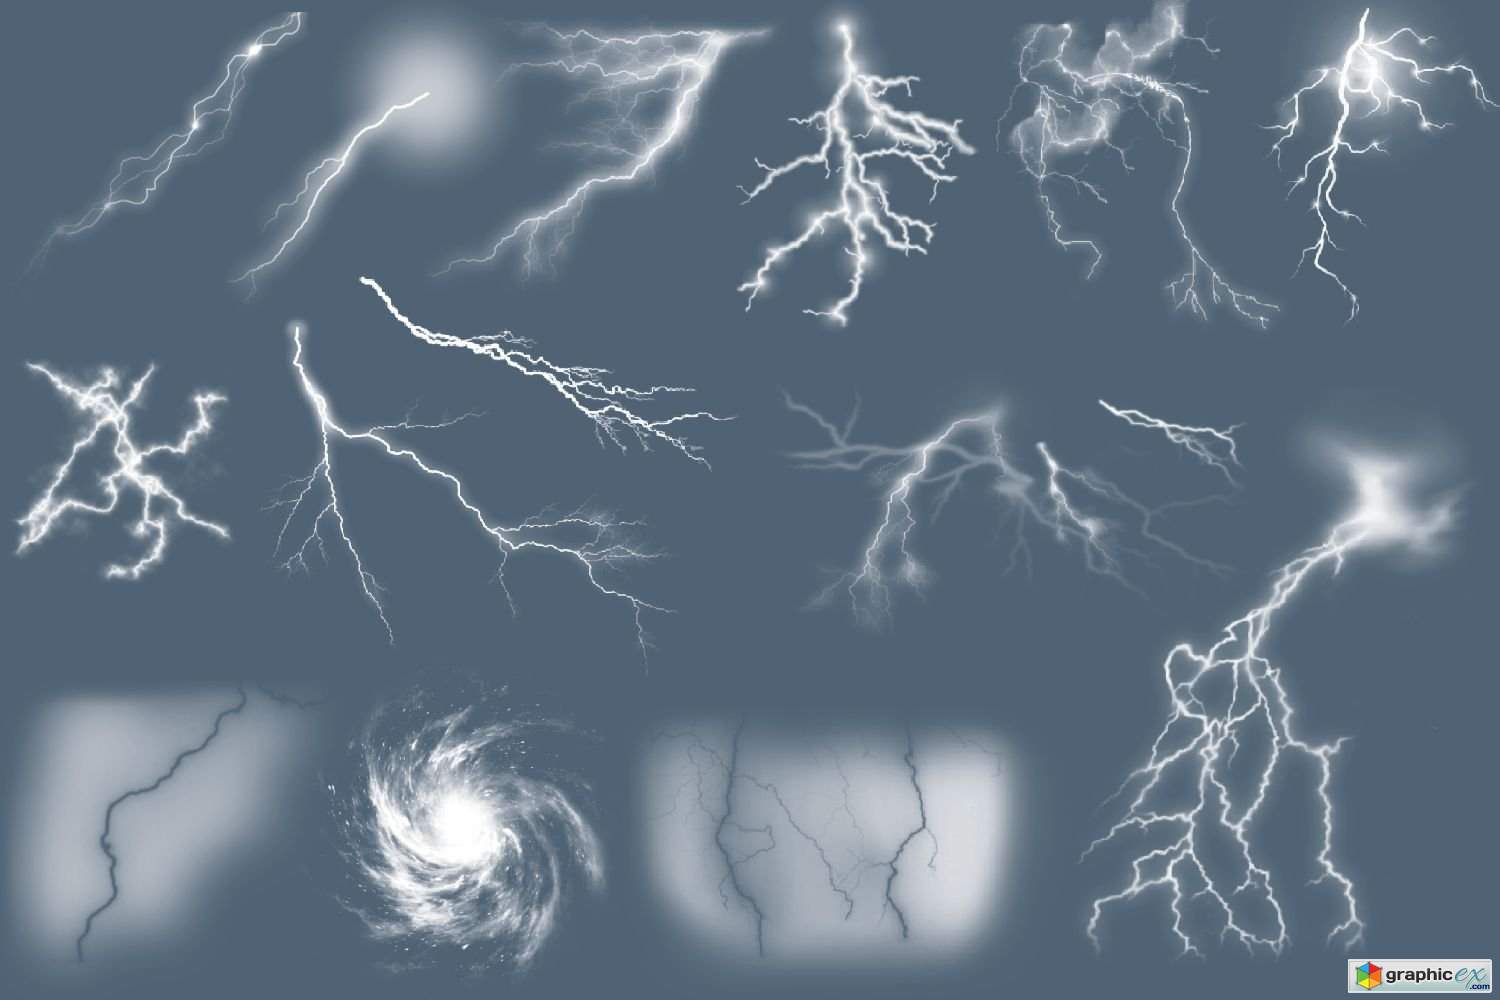 Storm and Lightning Procreate Brushes 